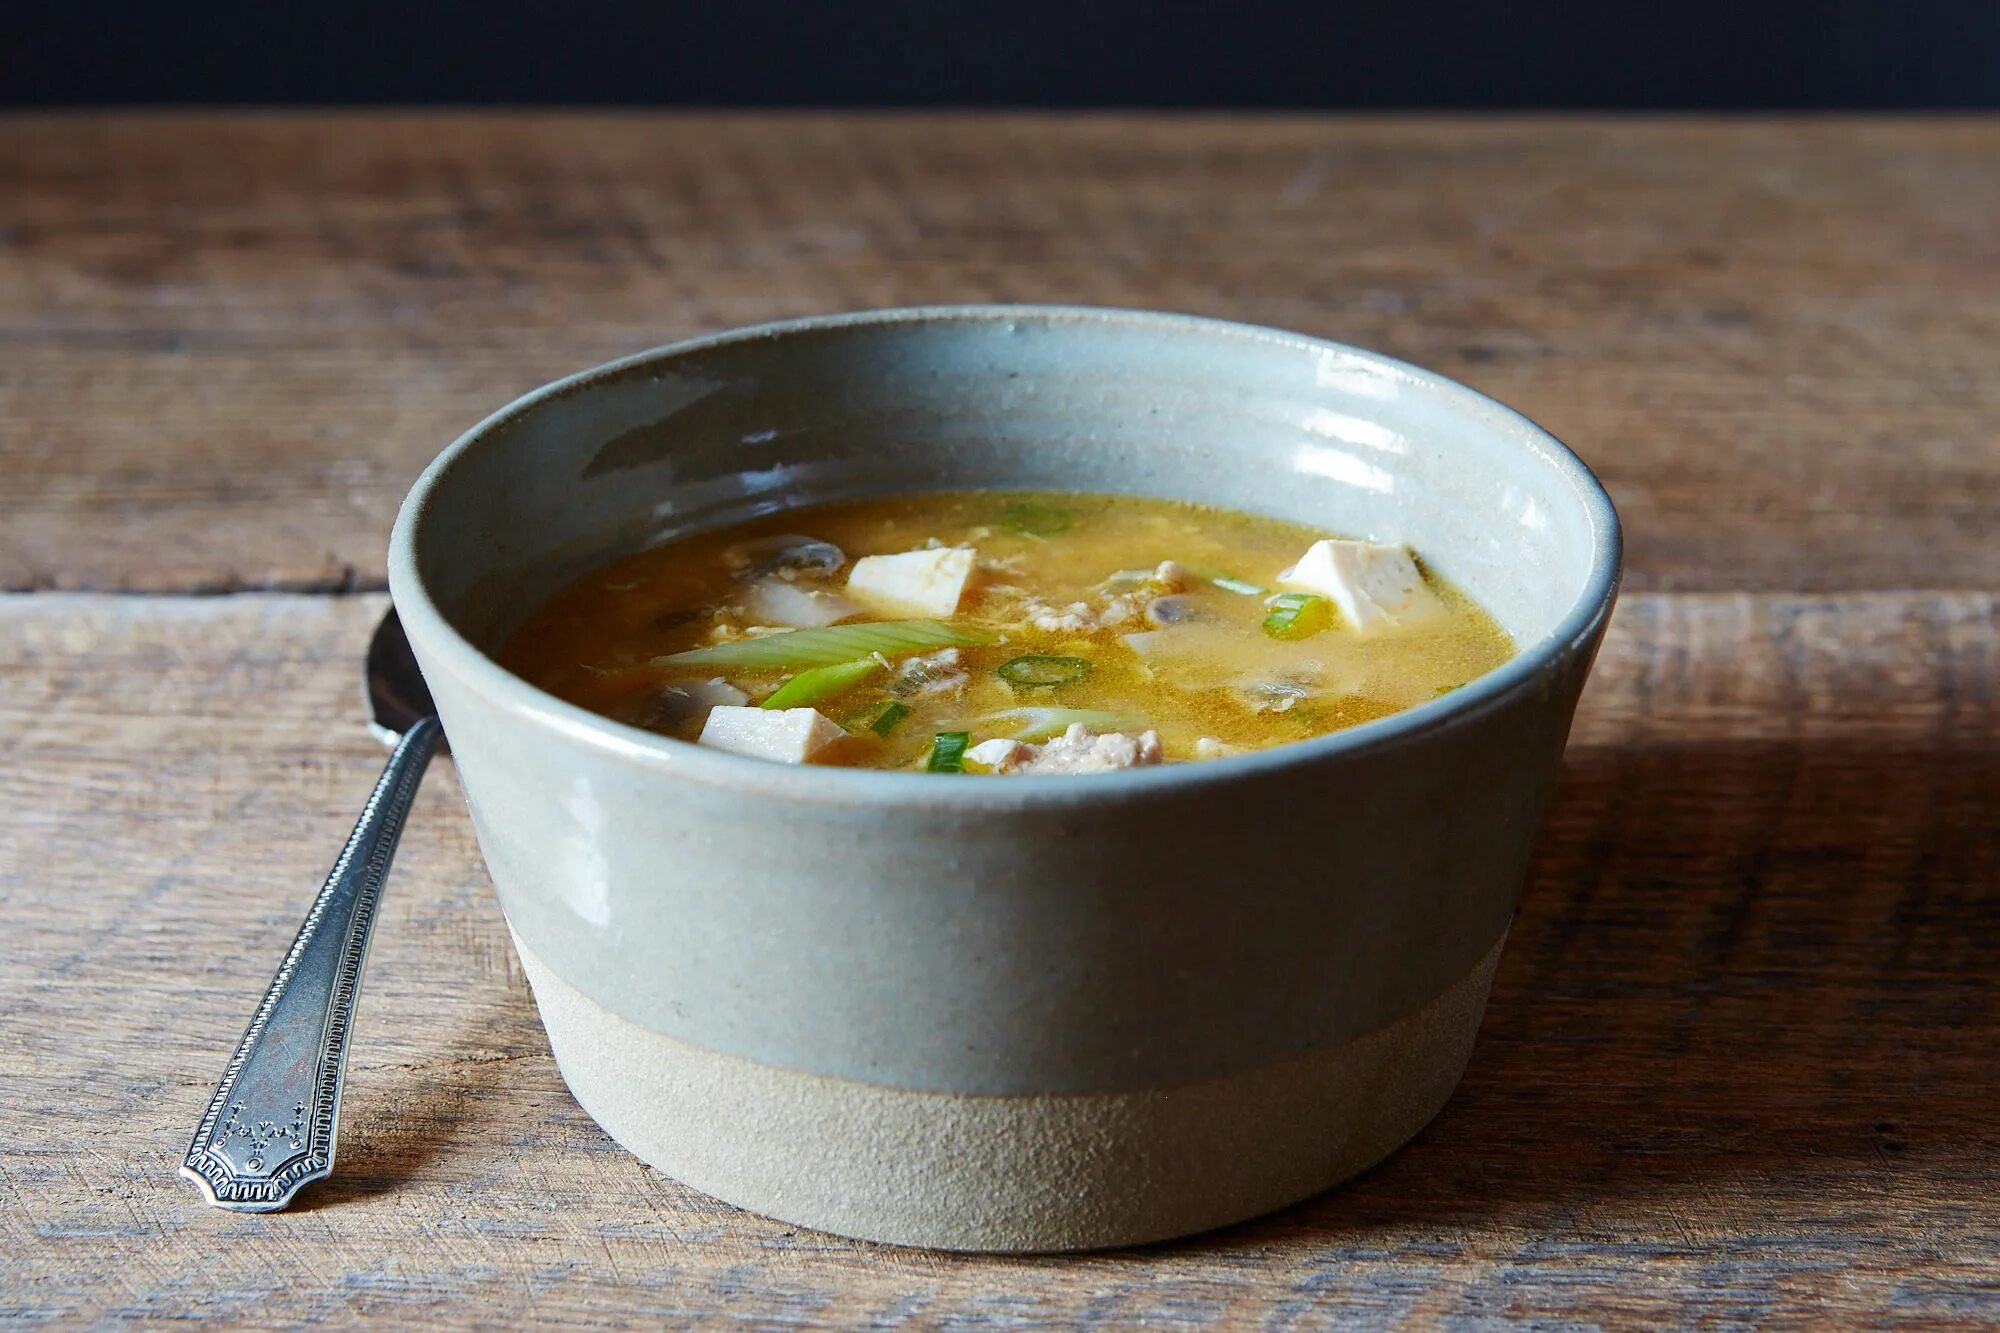 Soup get. Суп остыл. Суп остывает. Чанг суп. Обложка супы.